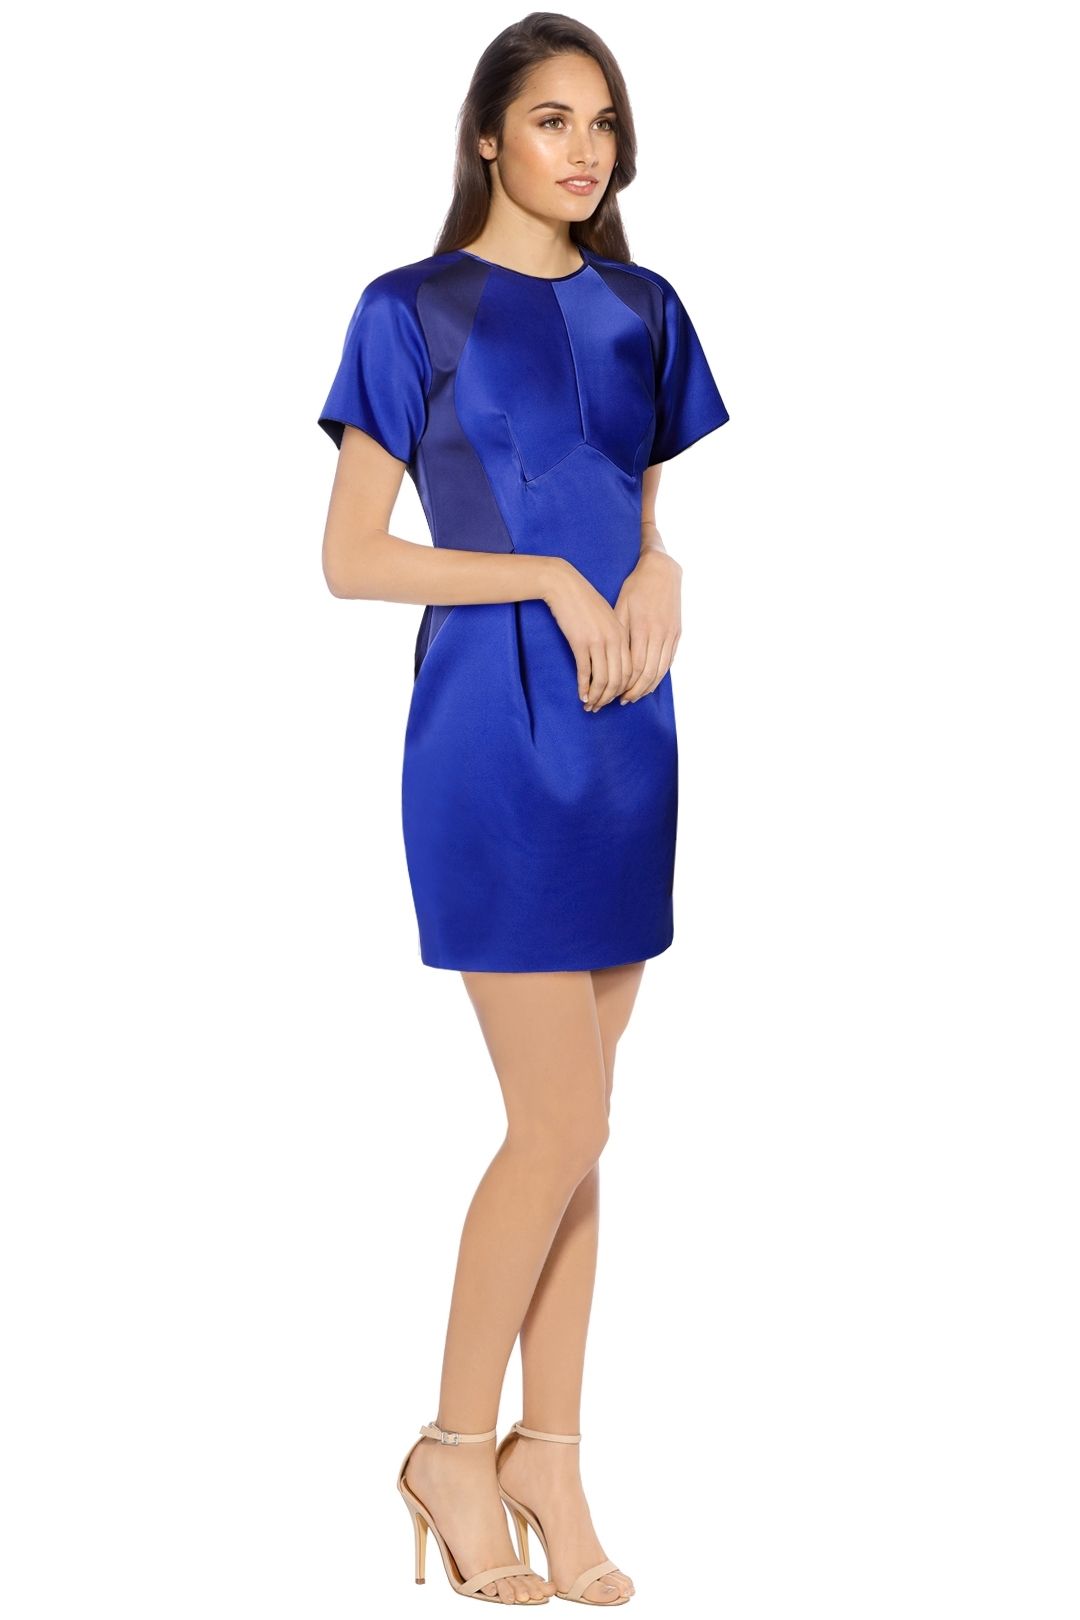 Dion Lee - Bonded Satin Mini Dress - Blue - Side